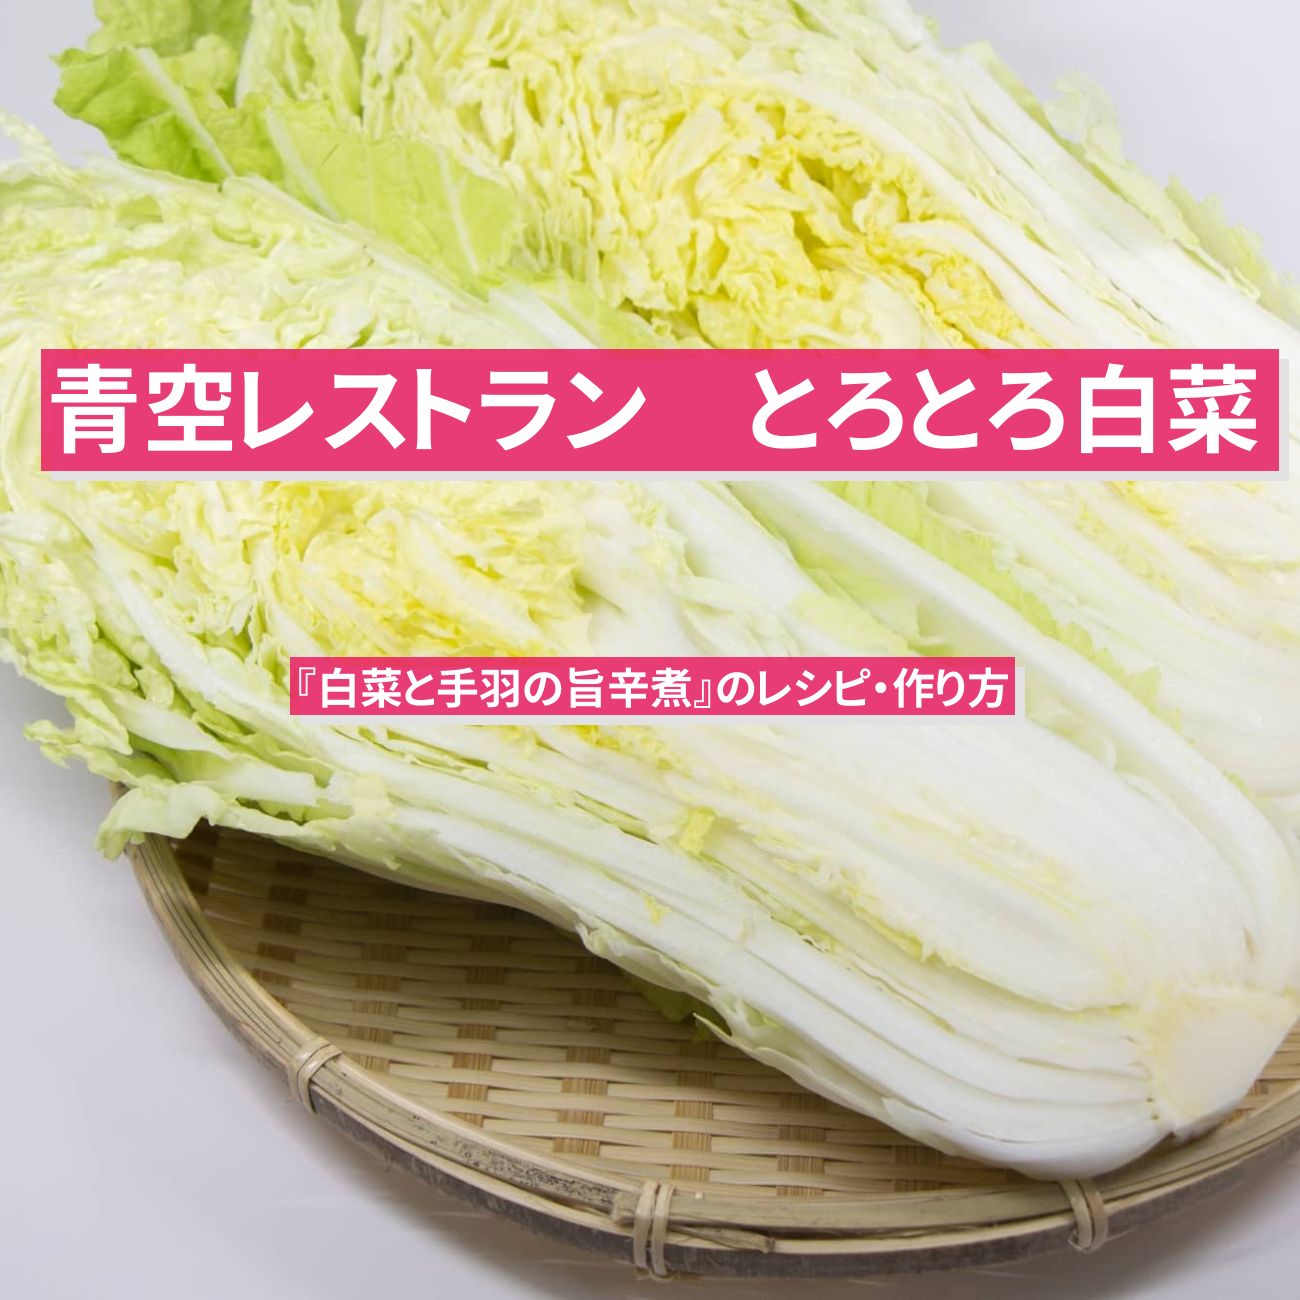 【青空レストラン】『白菜と手羽の旨辛煮』のレシピ・作り方